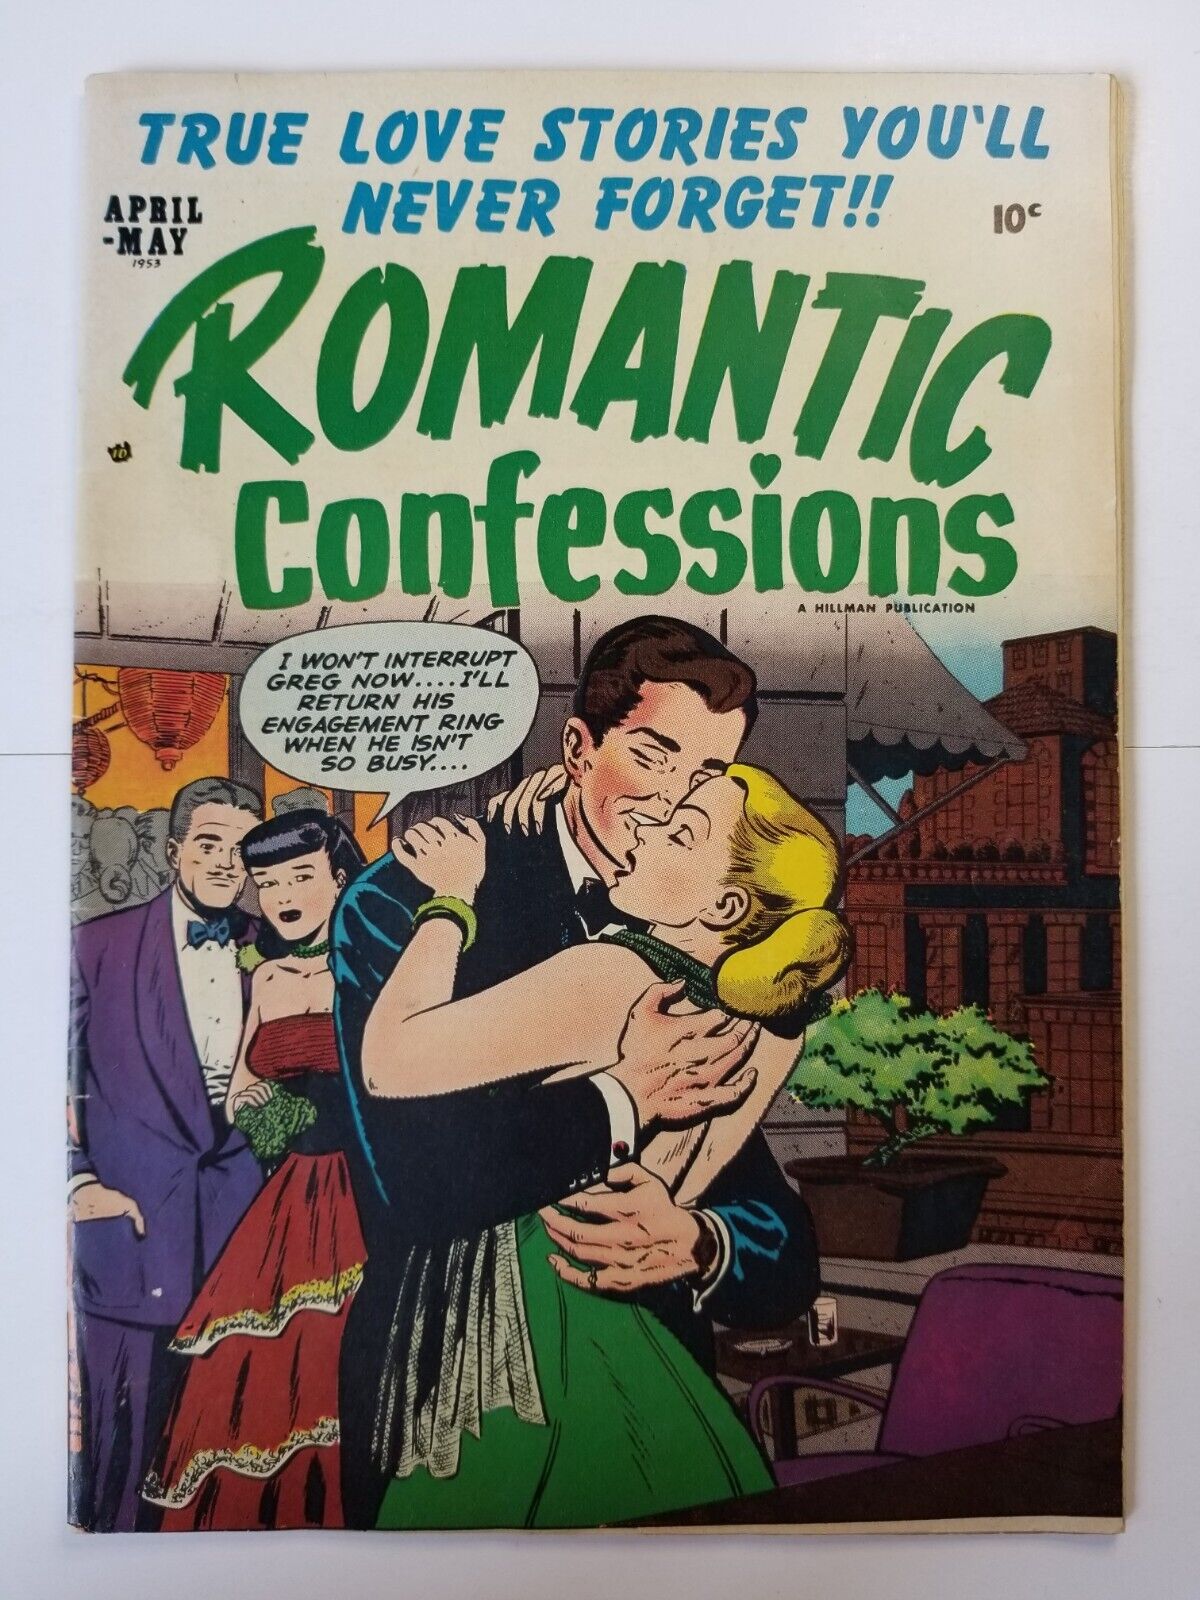 Romantic Confessions issue #1 VF (1953, Hillman) classic golden age romance